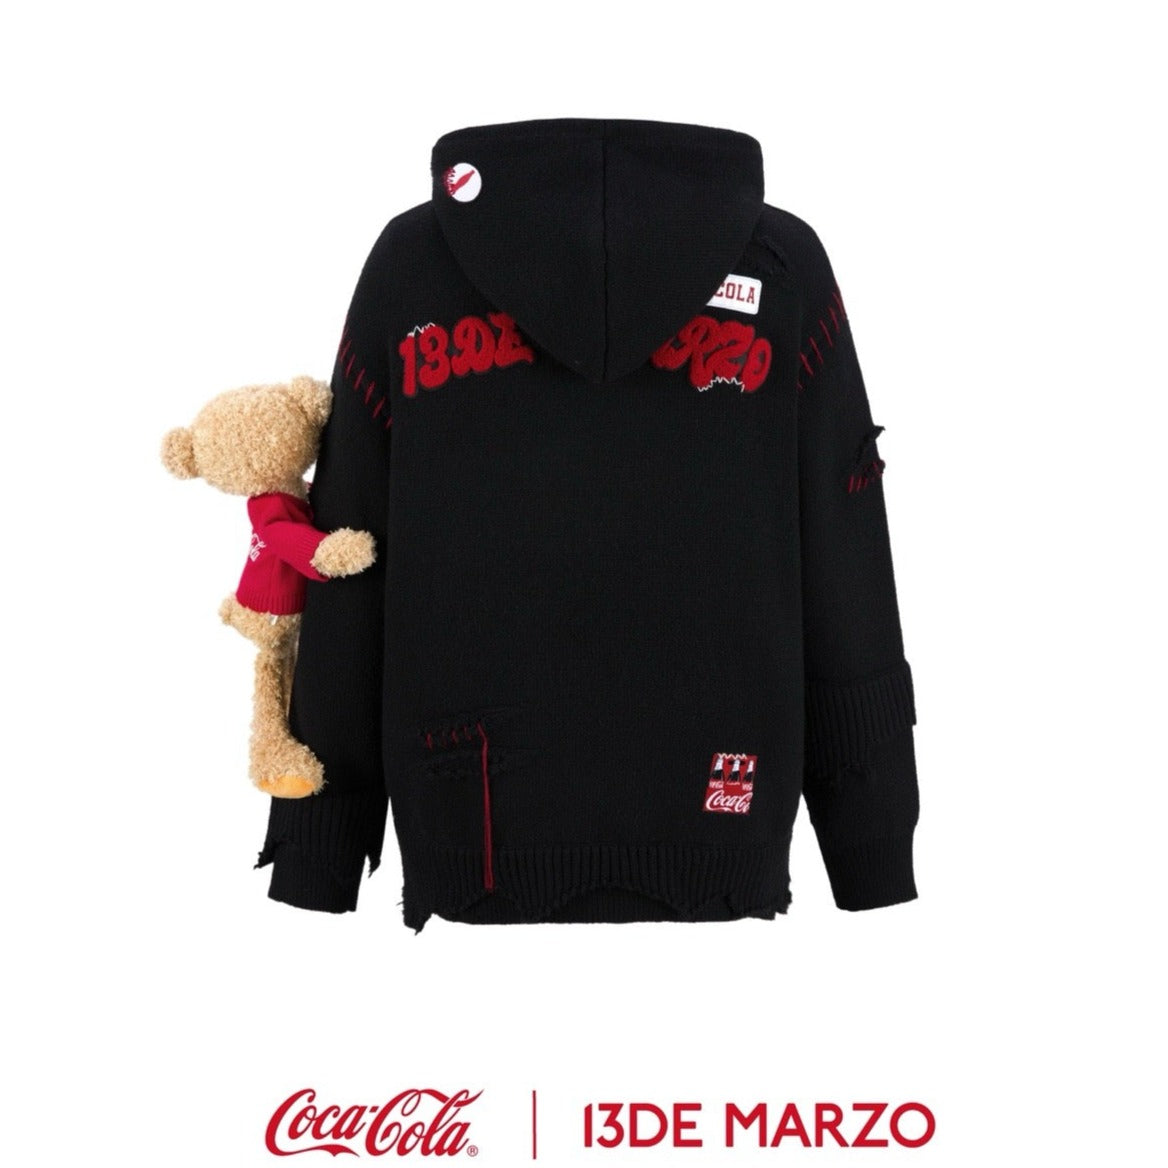 13DE MARZO x Coca-Cola Bear Broken Knit Hoodie Black